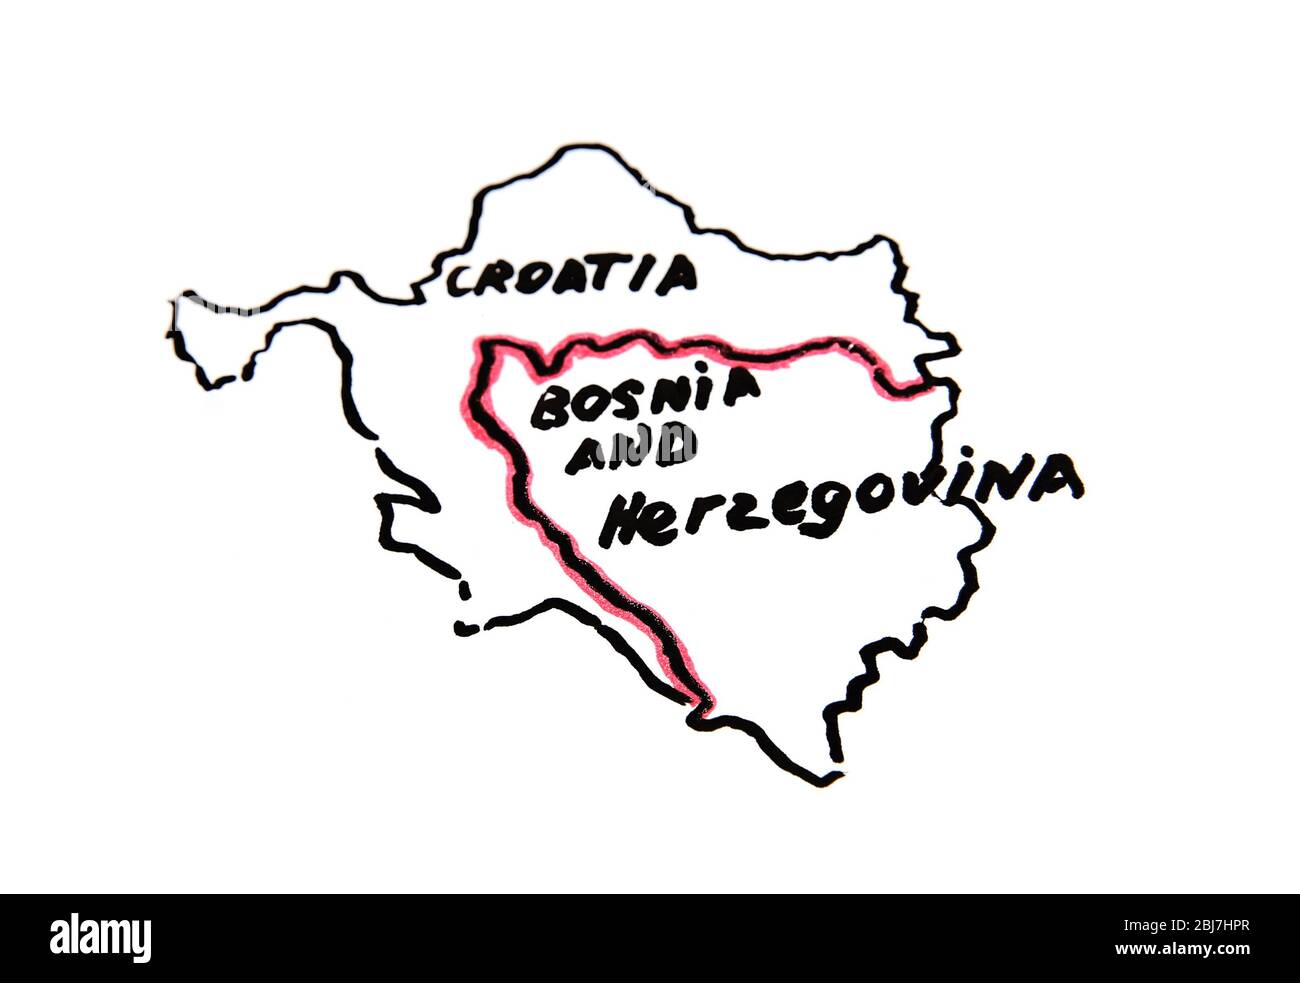 Carte de la Croatie et de la Bosnie-Herzégovine - concept de différend territorial Banque D'Images